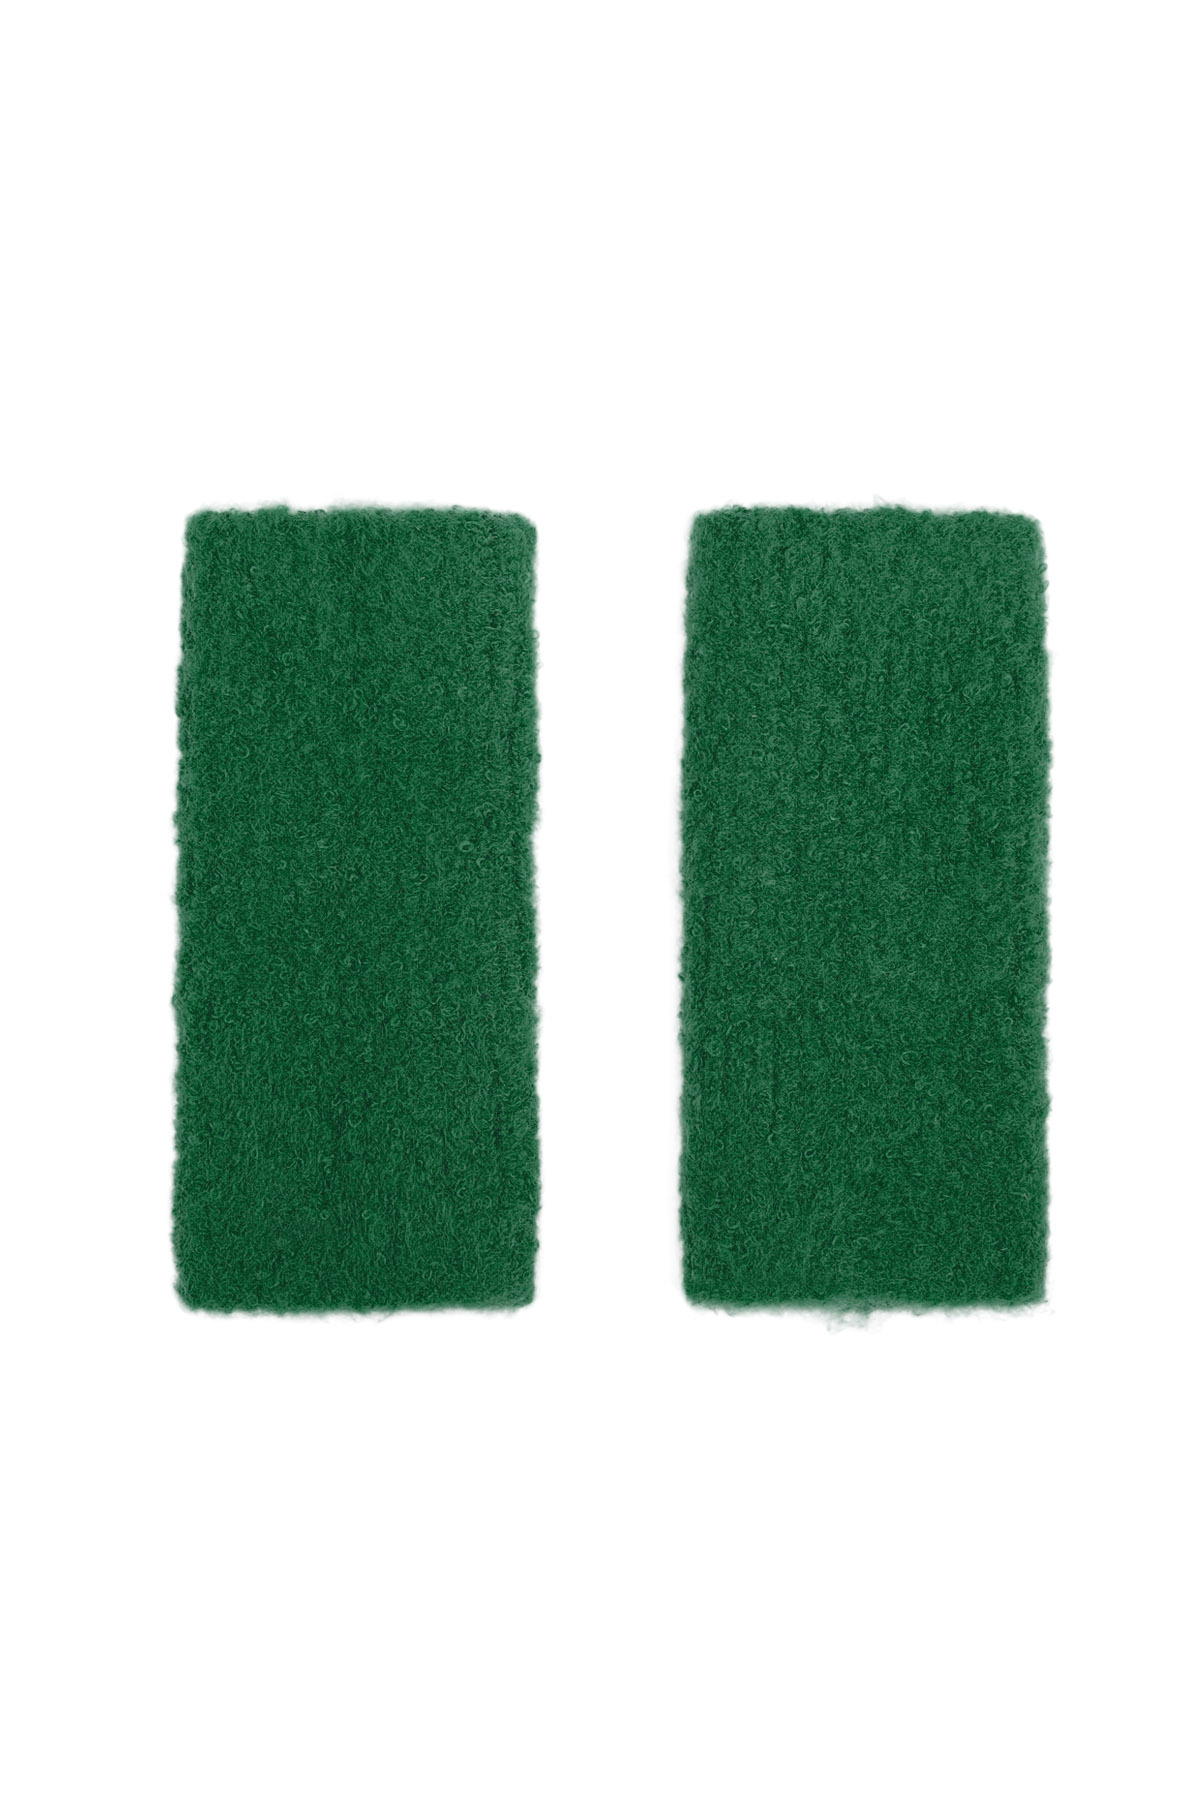 Gants avec trou - vert foncé Image3